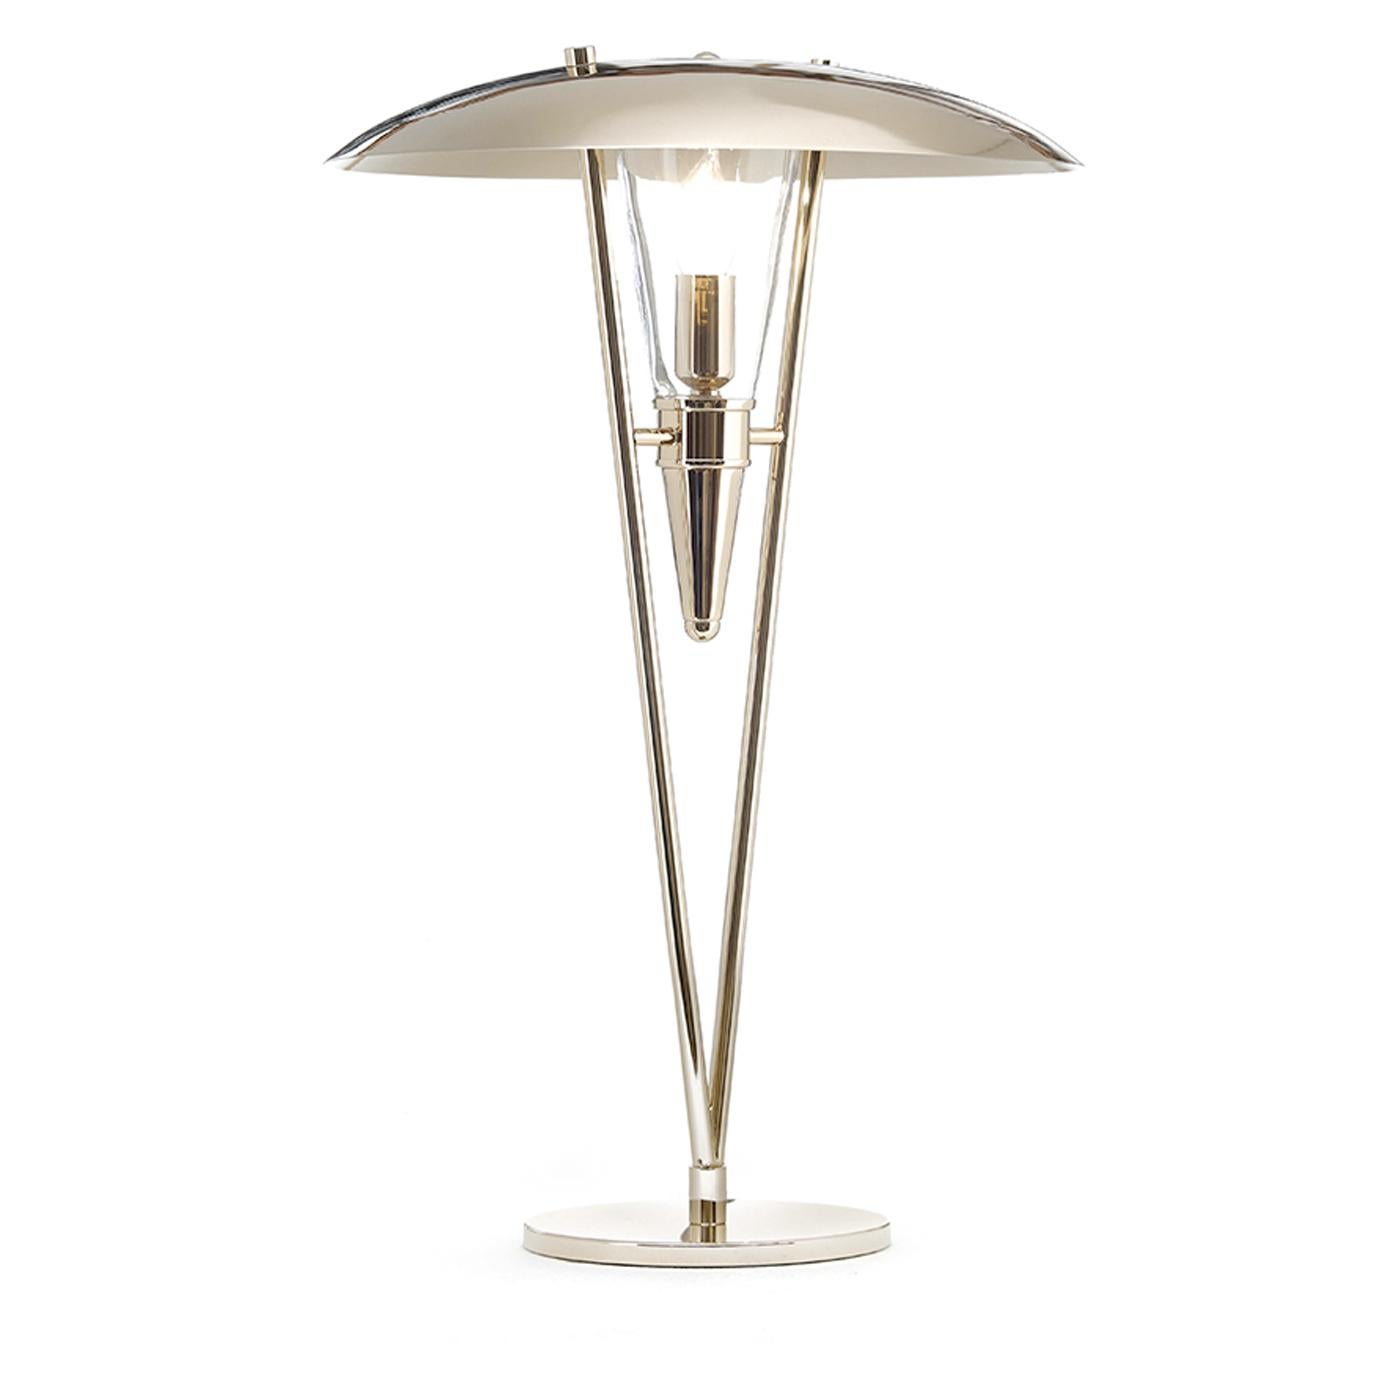 Italian Art Deco Table Lamp